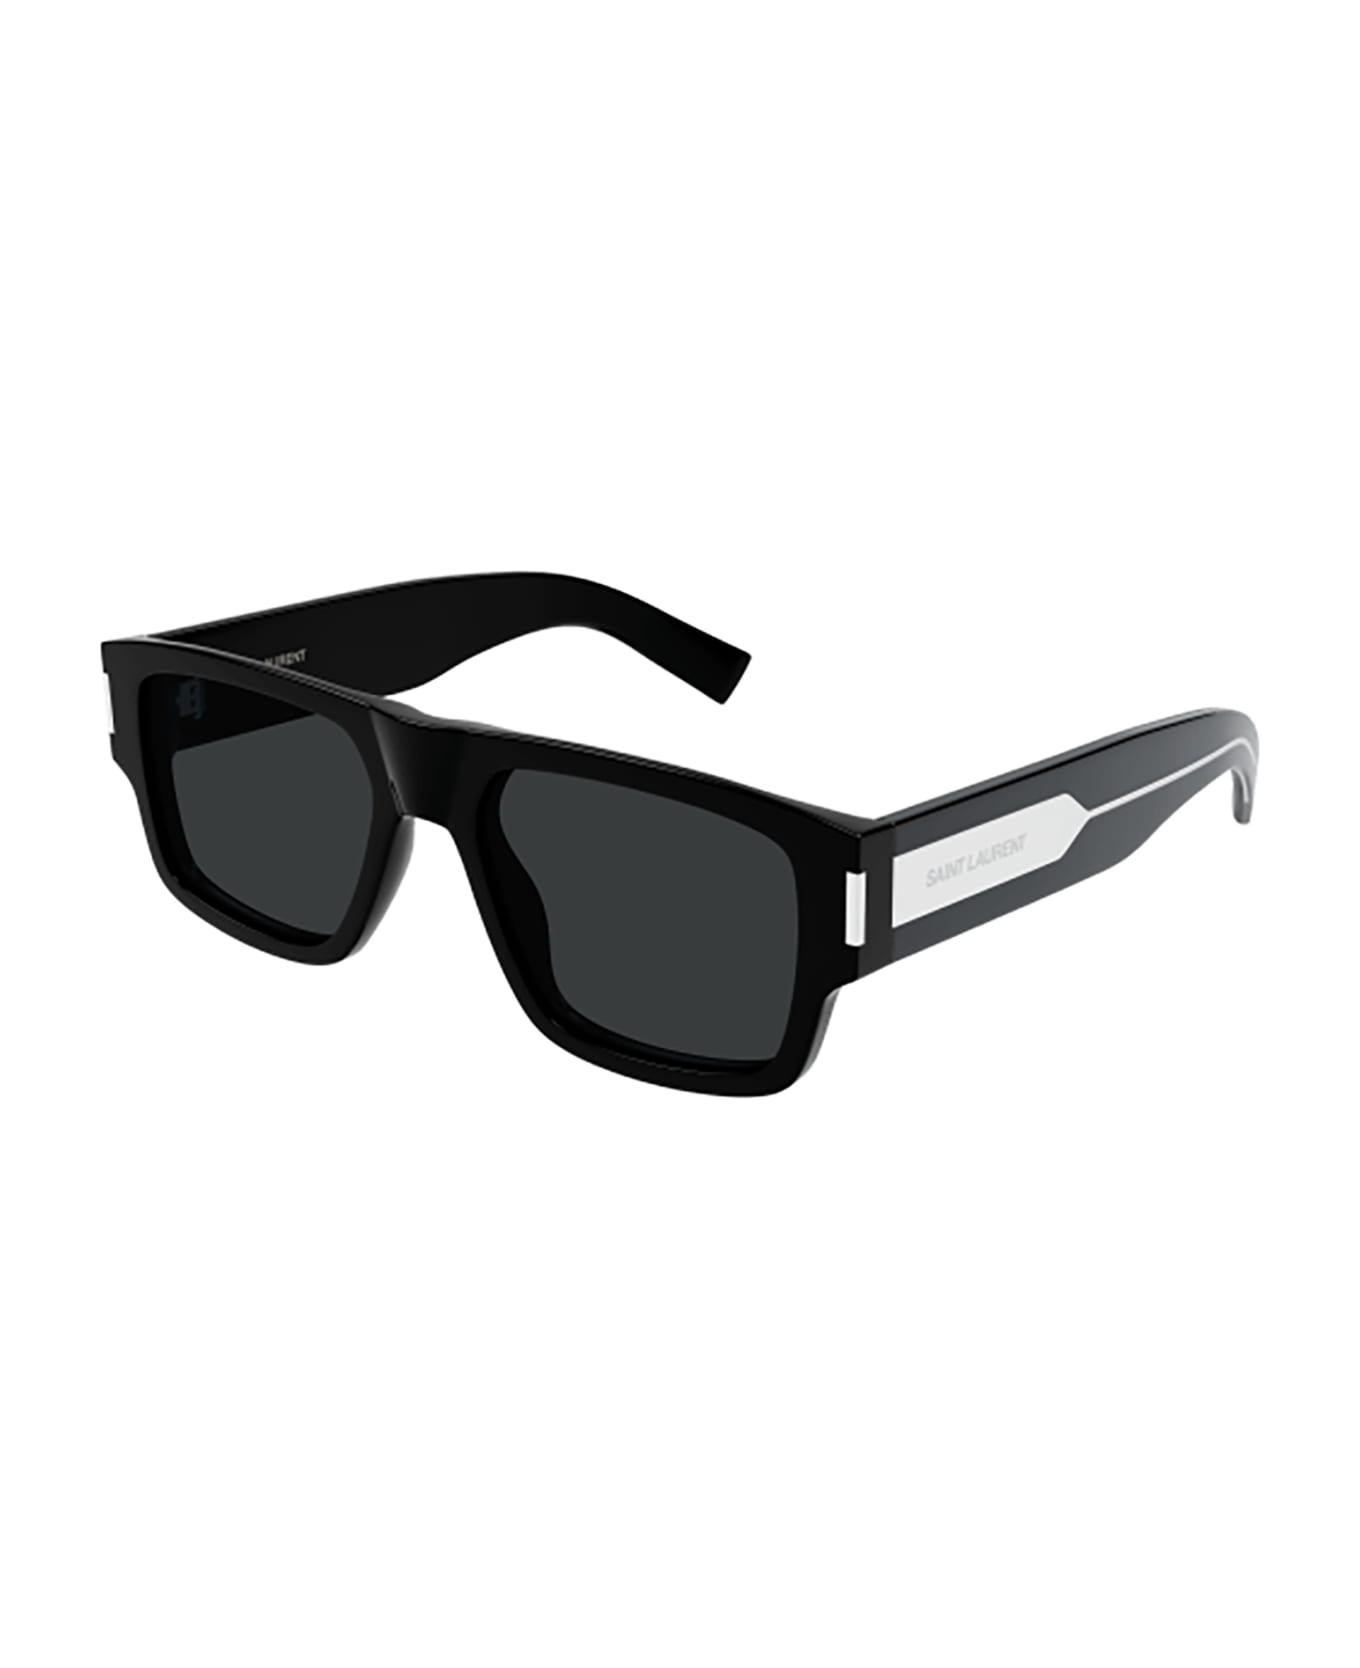 Saint Laurent Eyewear SL 659 yellow Sunglasses - C4 cat-eye yellow sunglasses